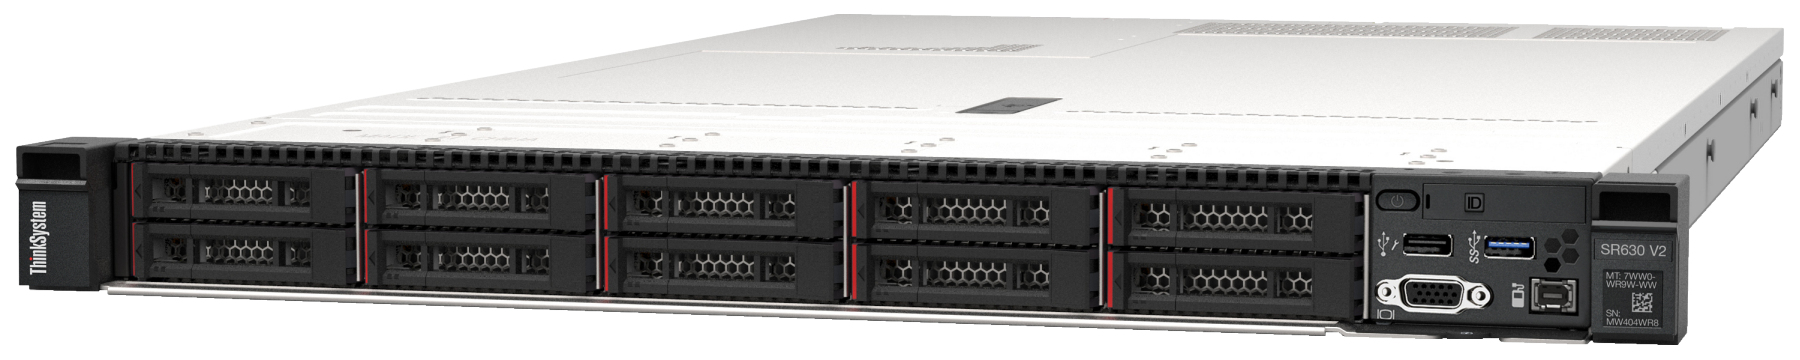 Сервер Lenovo ThinkSystem SR630 V2 (7Z71A051EA). Фиксированная комплектация сервера